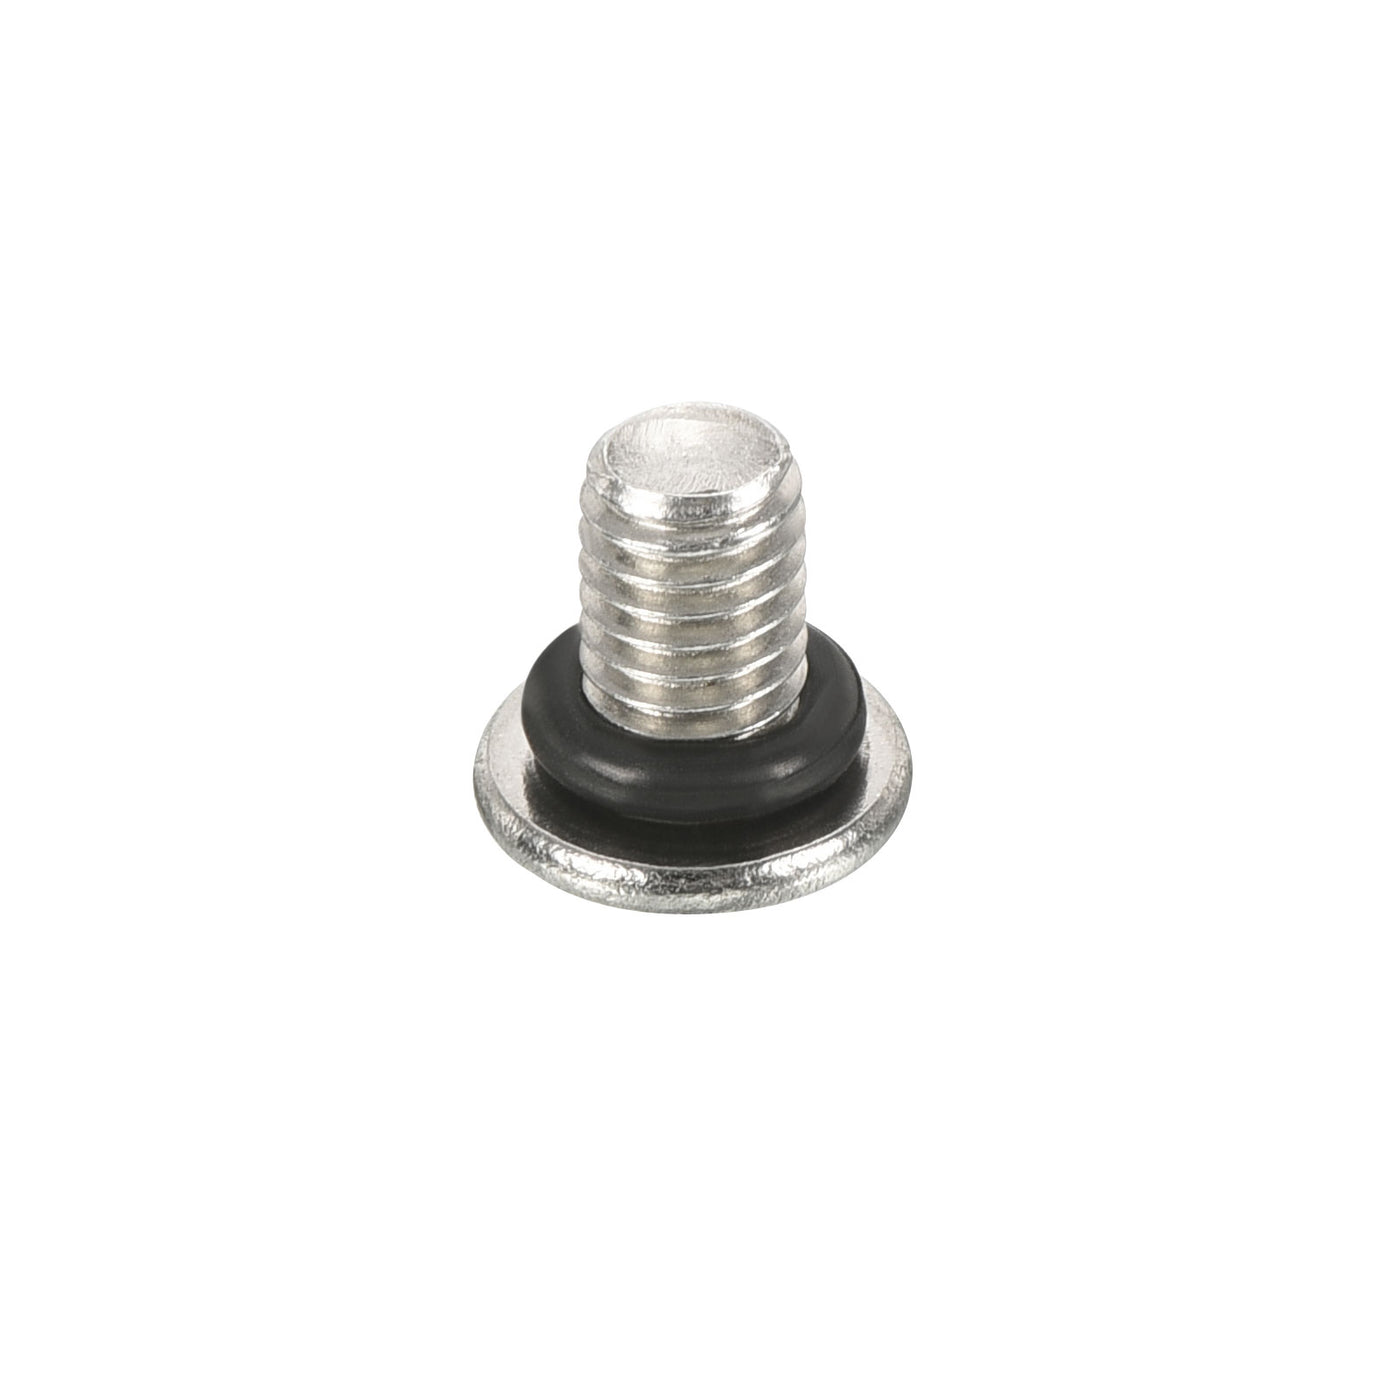 Harfington M5*0.8 Hex Head Pipe Fitting Plug, 3 Pack Male Thread 45# Steel Plug